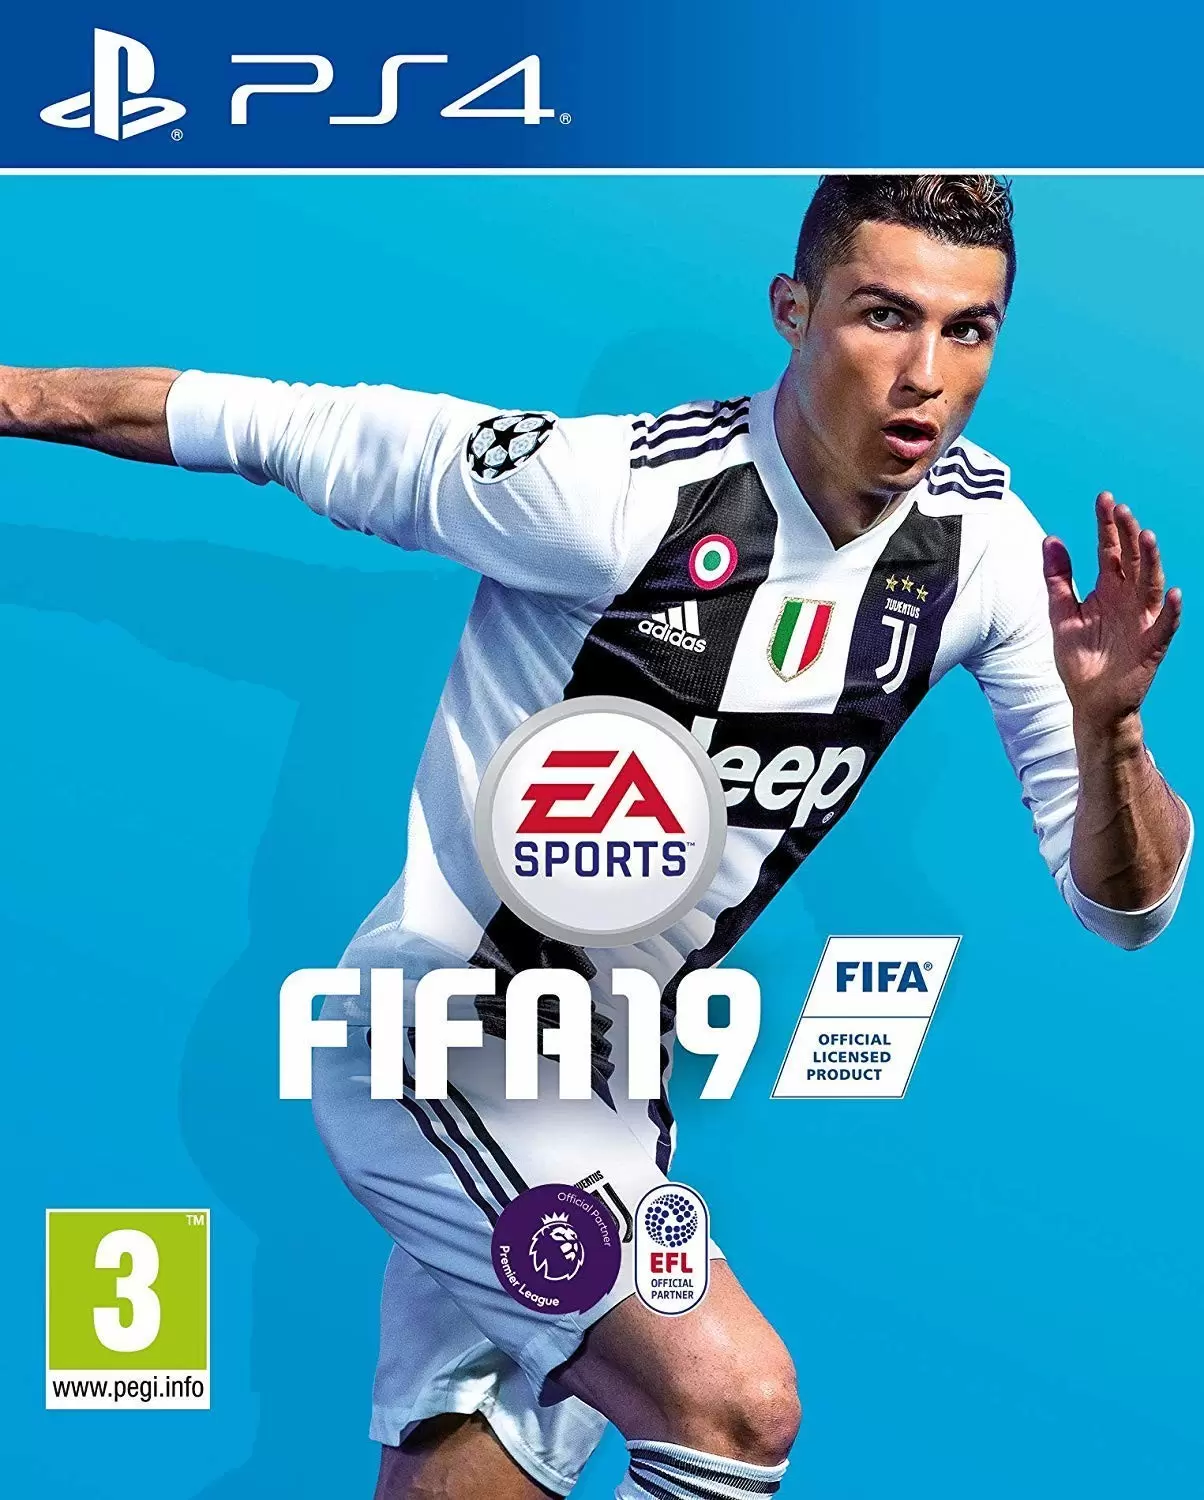 PS4 Games - FIFA 19